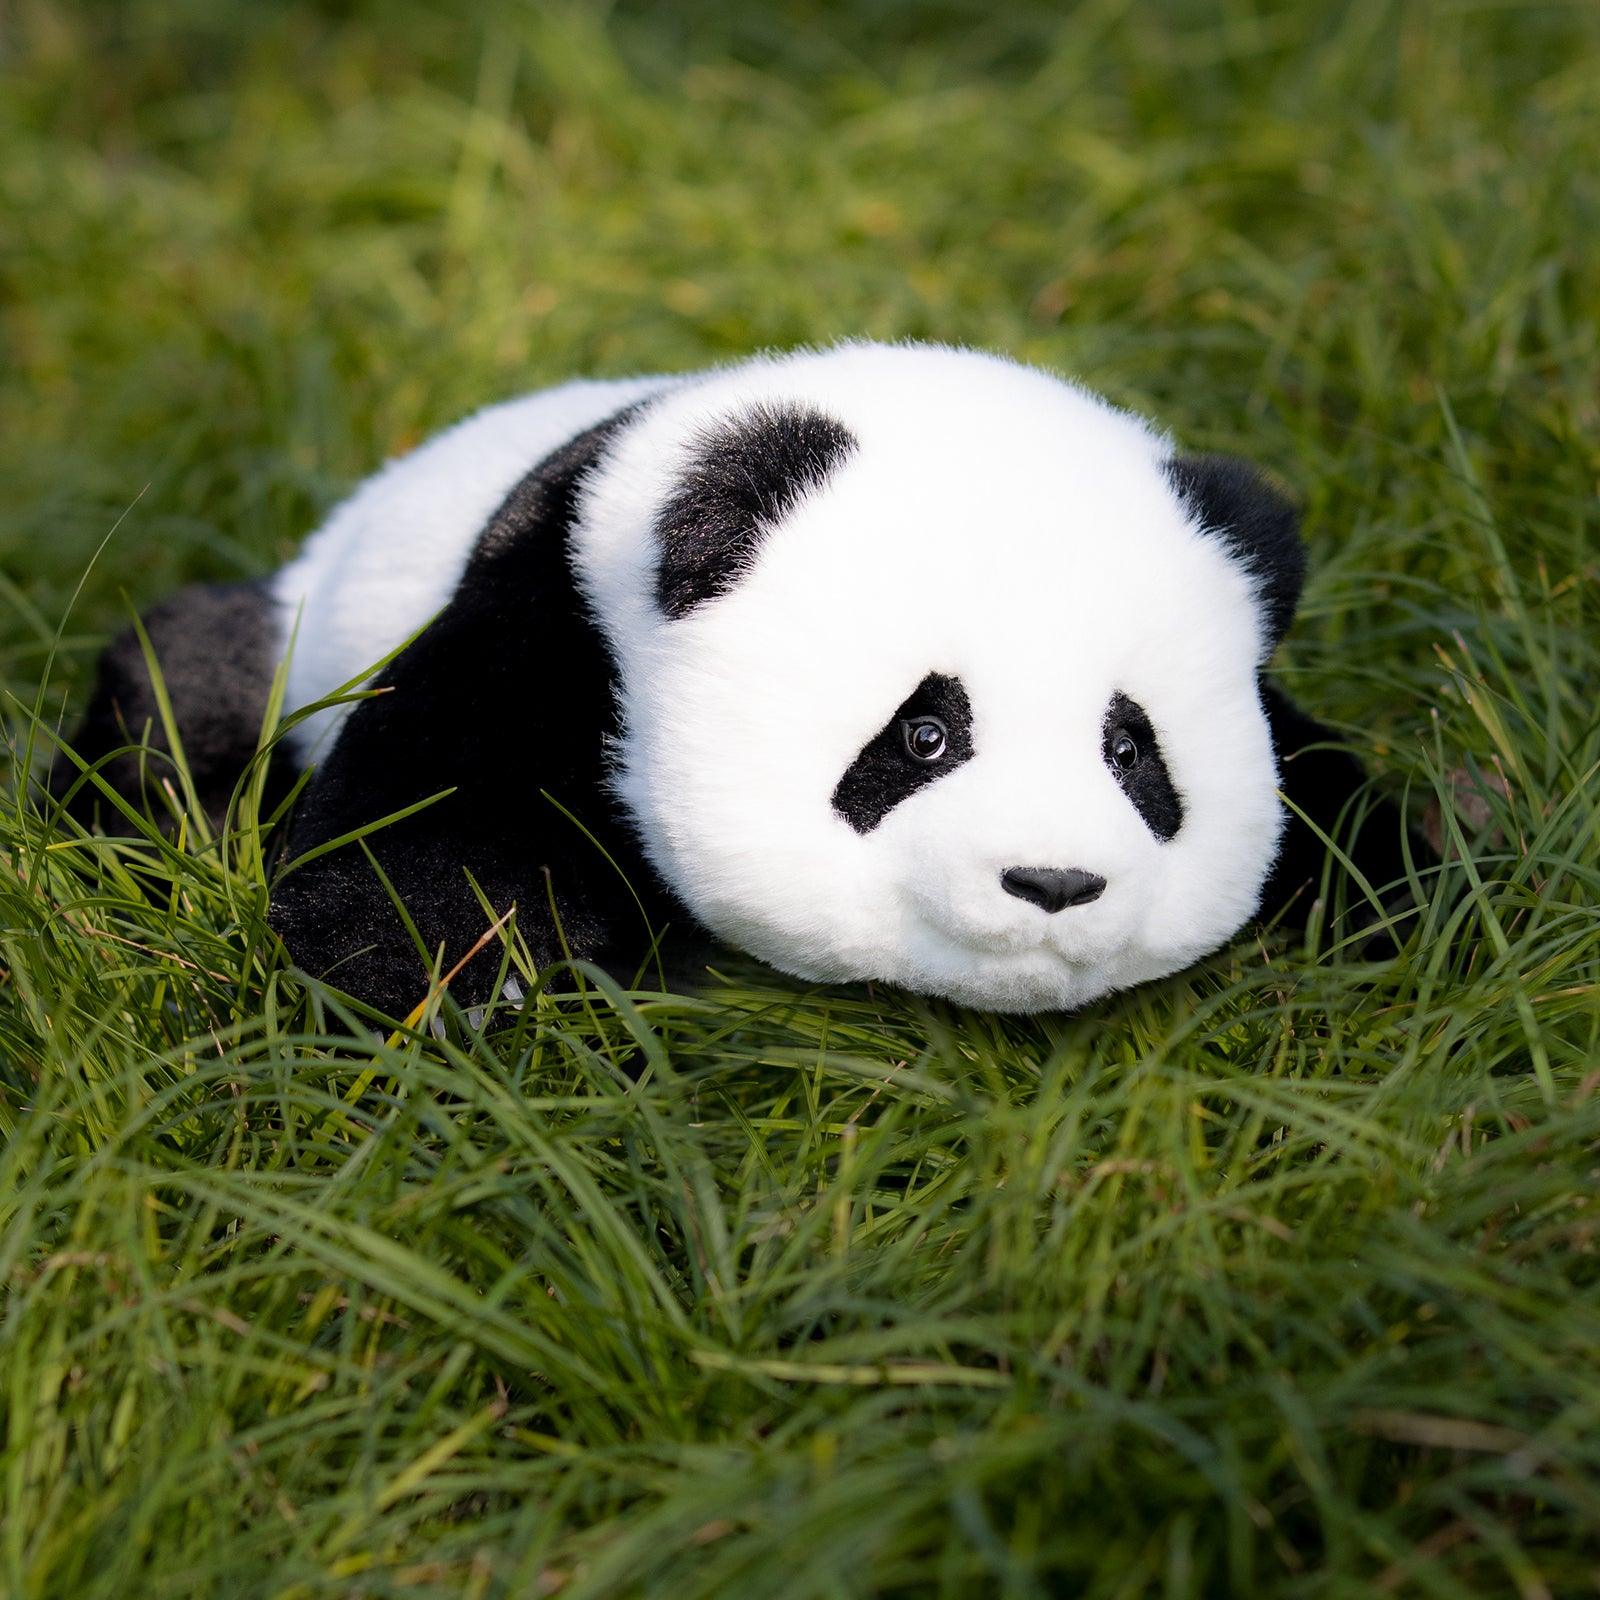 Weighted Stuffed Panda,Handmade 1.8kg/4LB Stuffed Panda Gifts